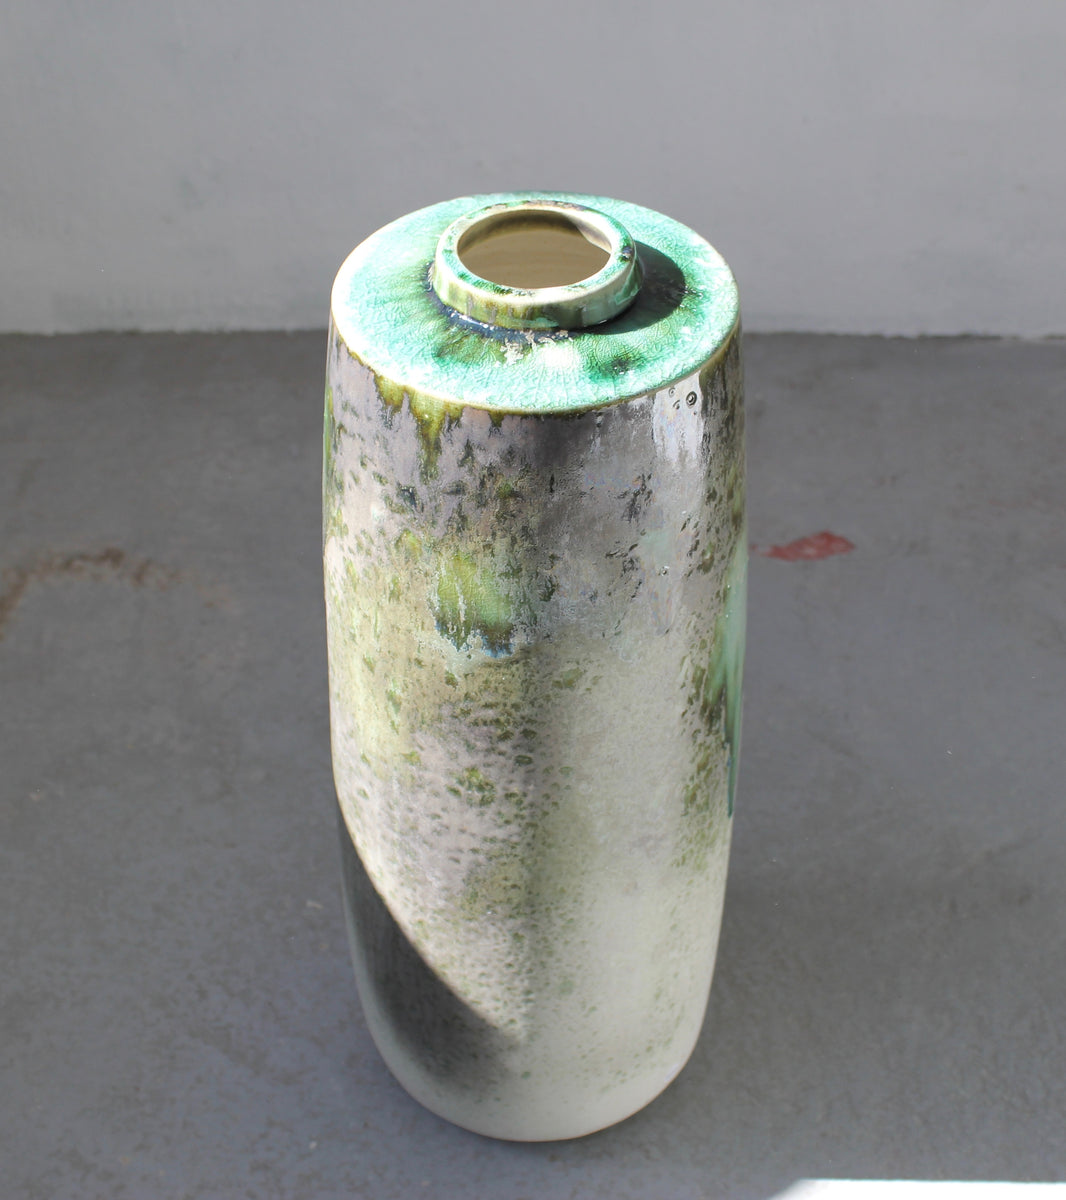 Giant Snub Nose Bottle Floor Vase <br> Green Glaze